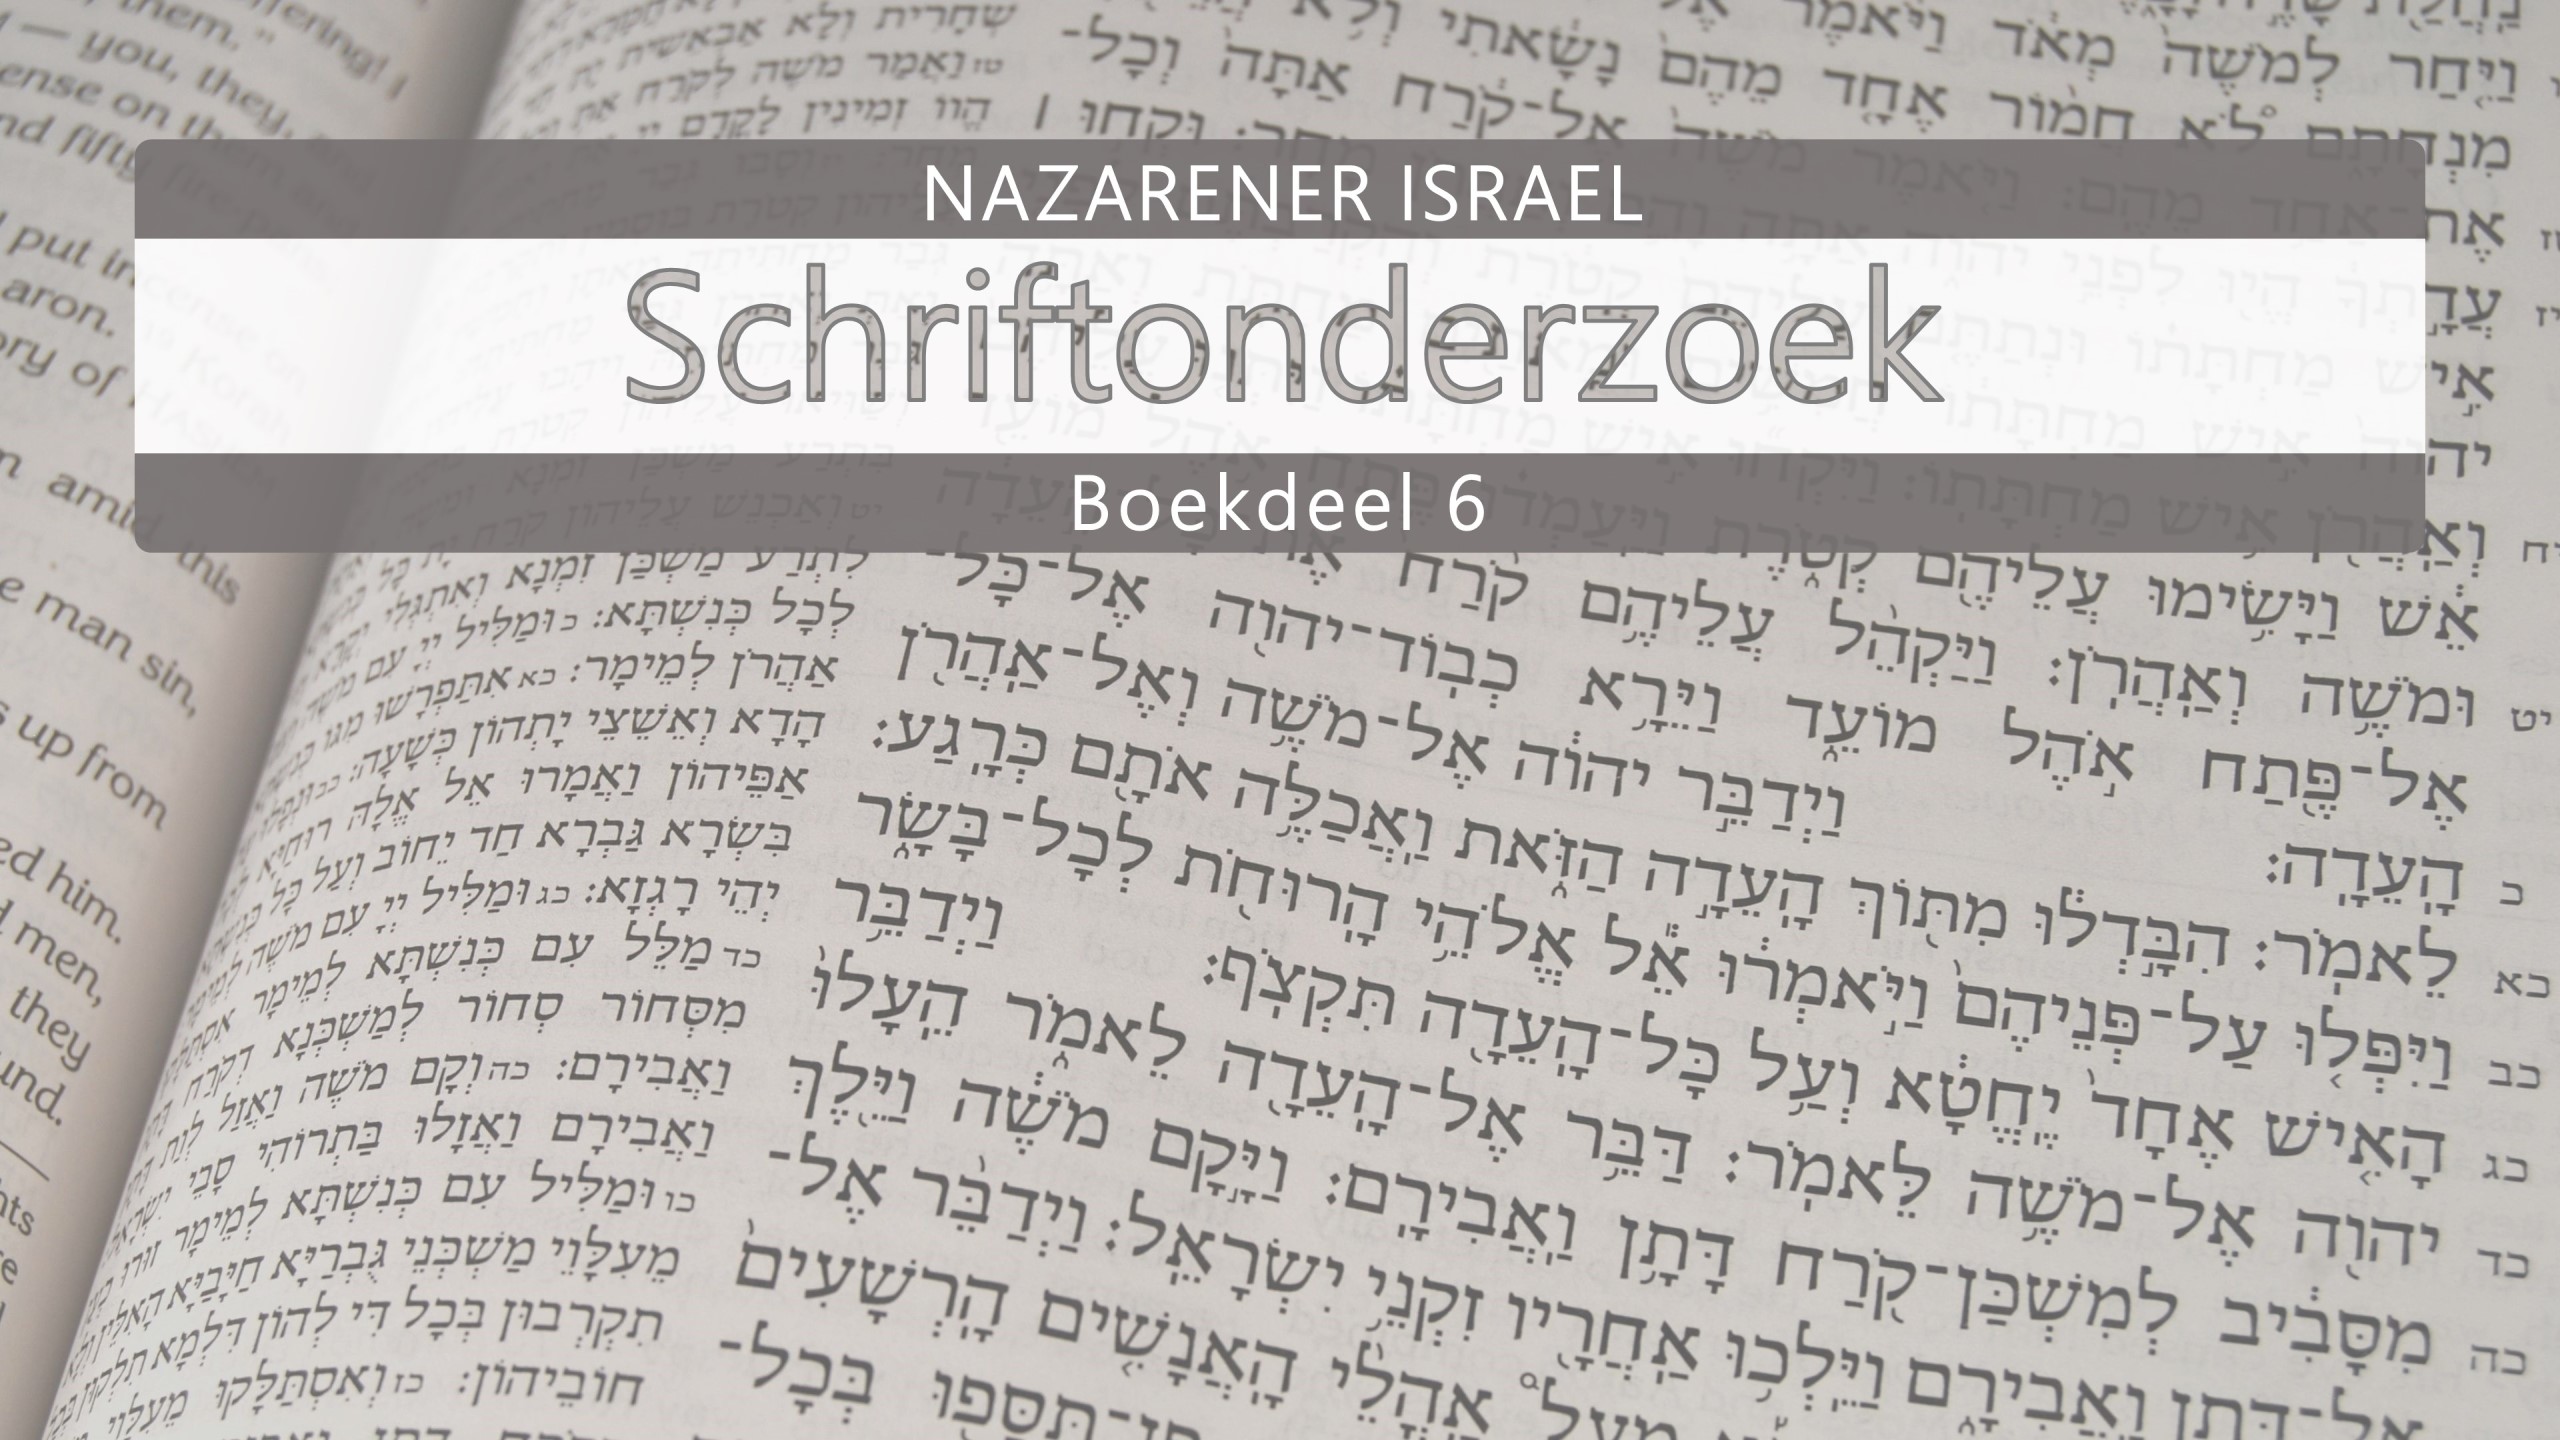 Nazarener Schriftonderzoek Boekdeel 6